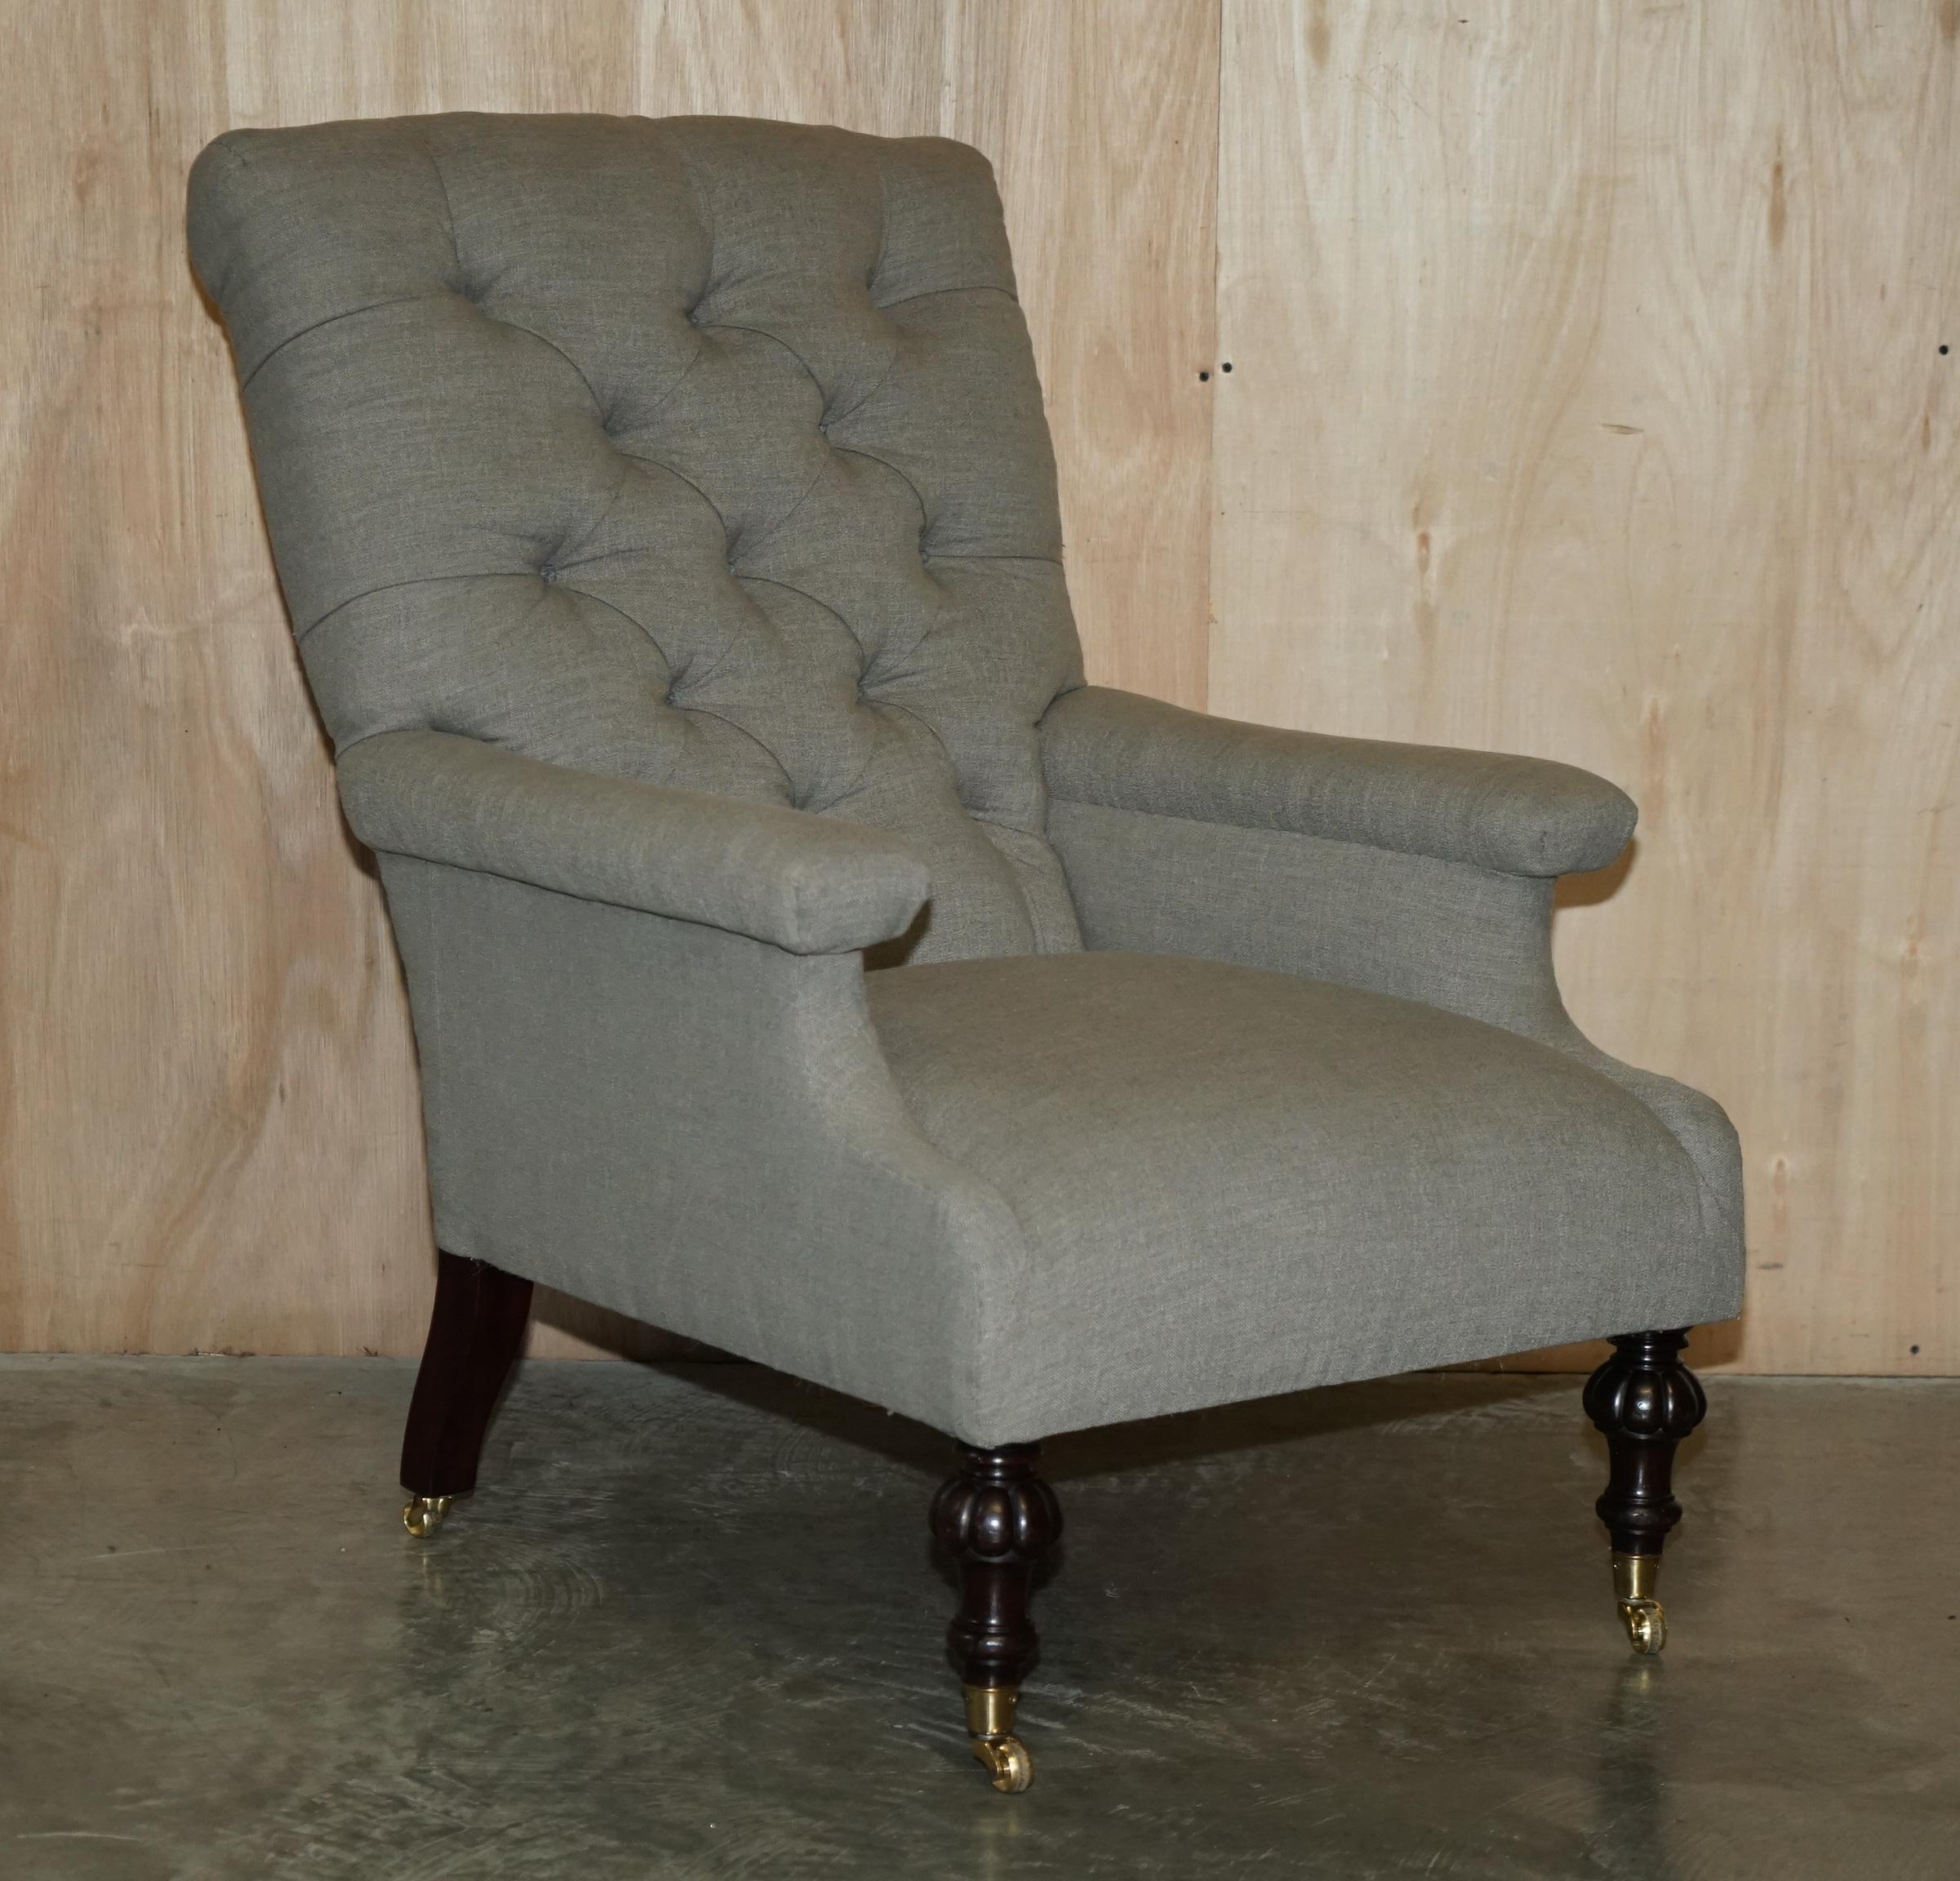 Nous avons le plaisir de proposer à la vente cette paire de fauteuils de bibliothèque très rares, estampillés William Morris & Co Edinburgh, pour elle et lui, en lin gris.

Il s'agit d'une paire de fauteuils d'époque Victorienne estampillés Morris